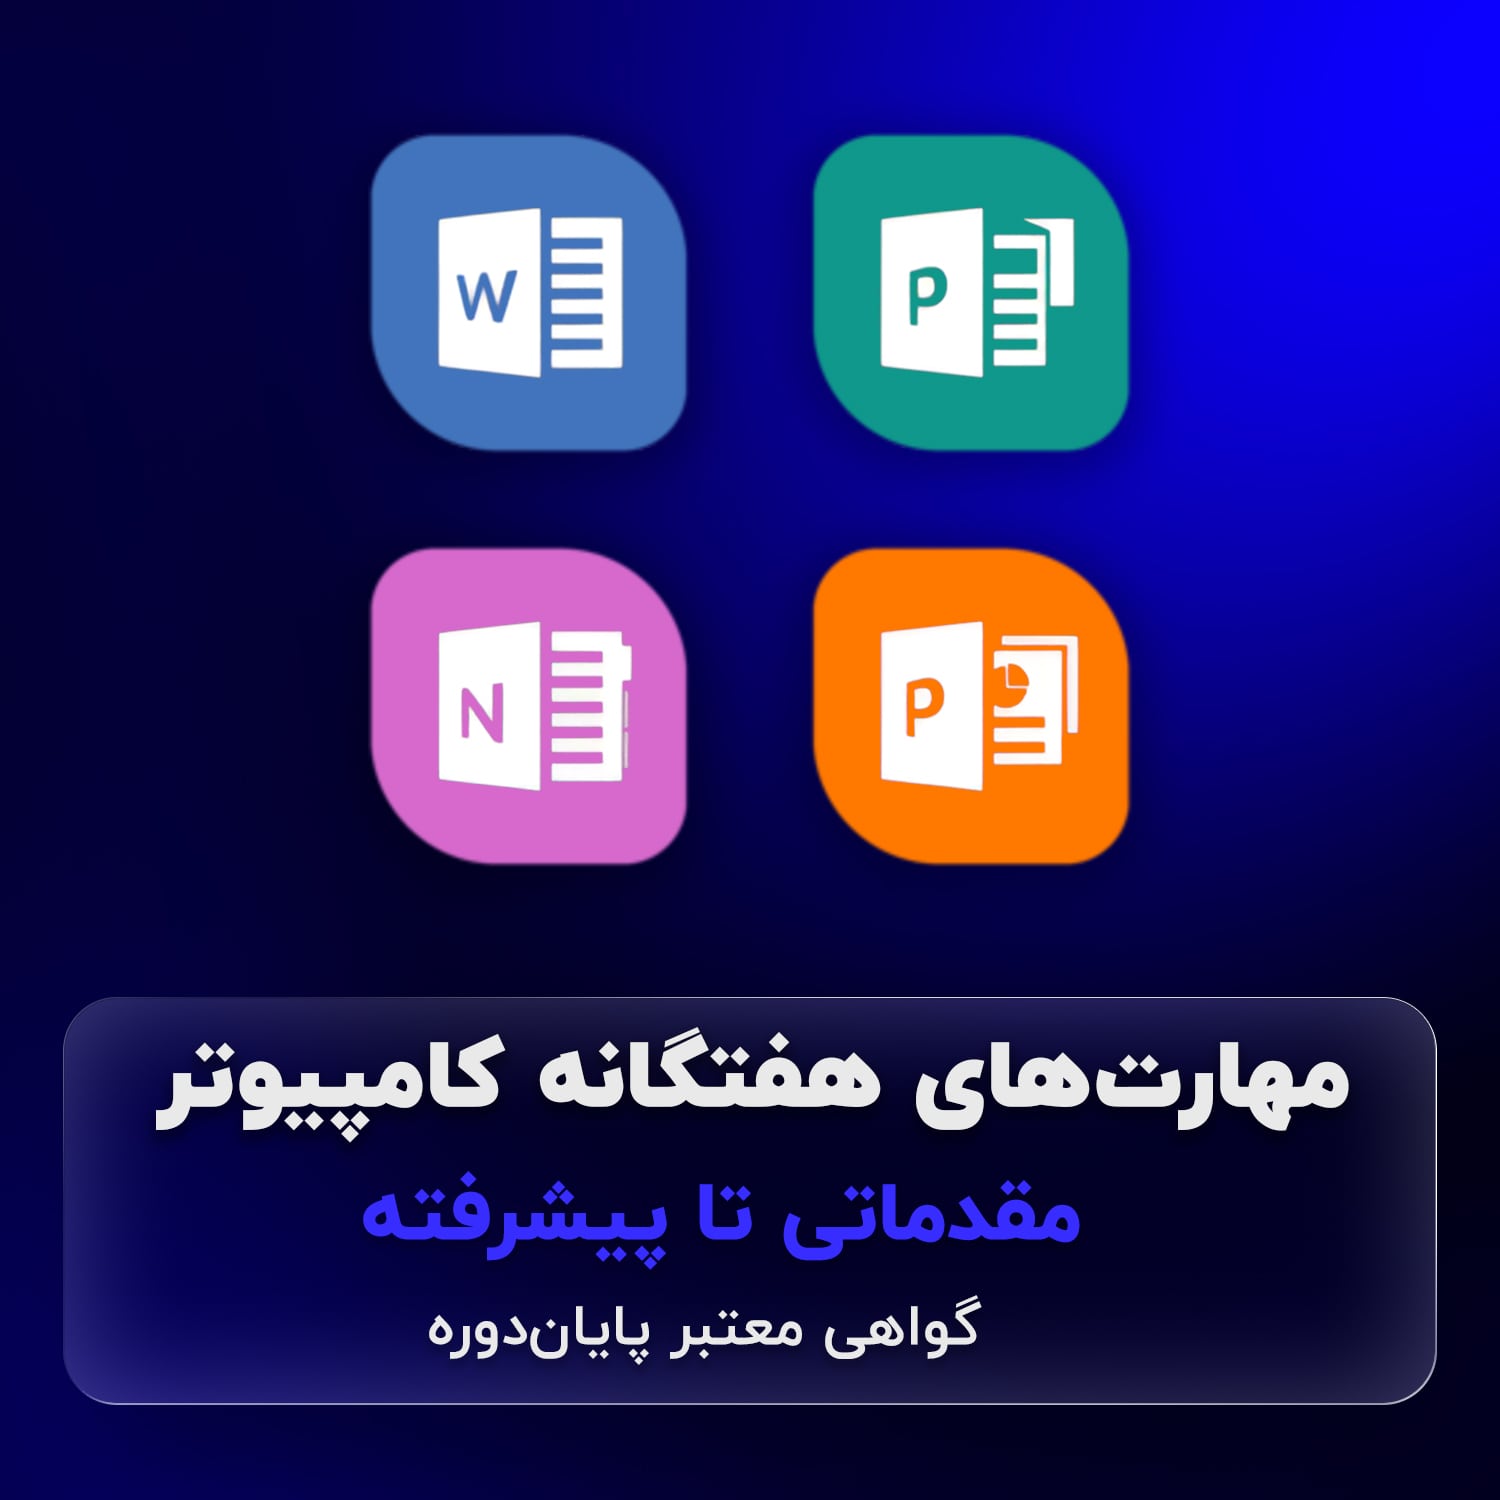 آموزش کامپیوتر ICDL با مدرک معتبر اصفهان